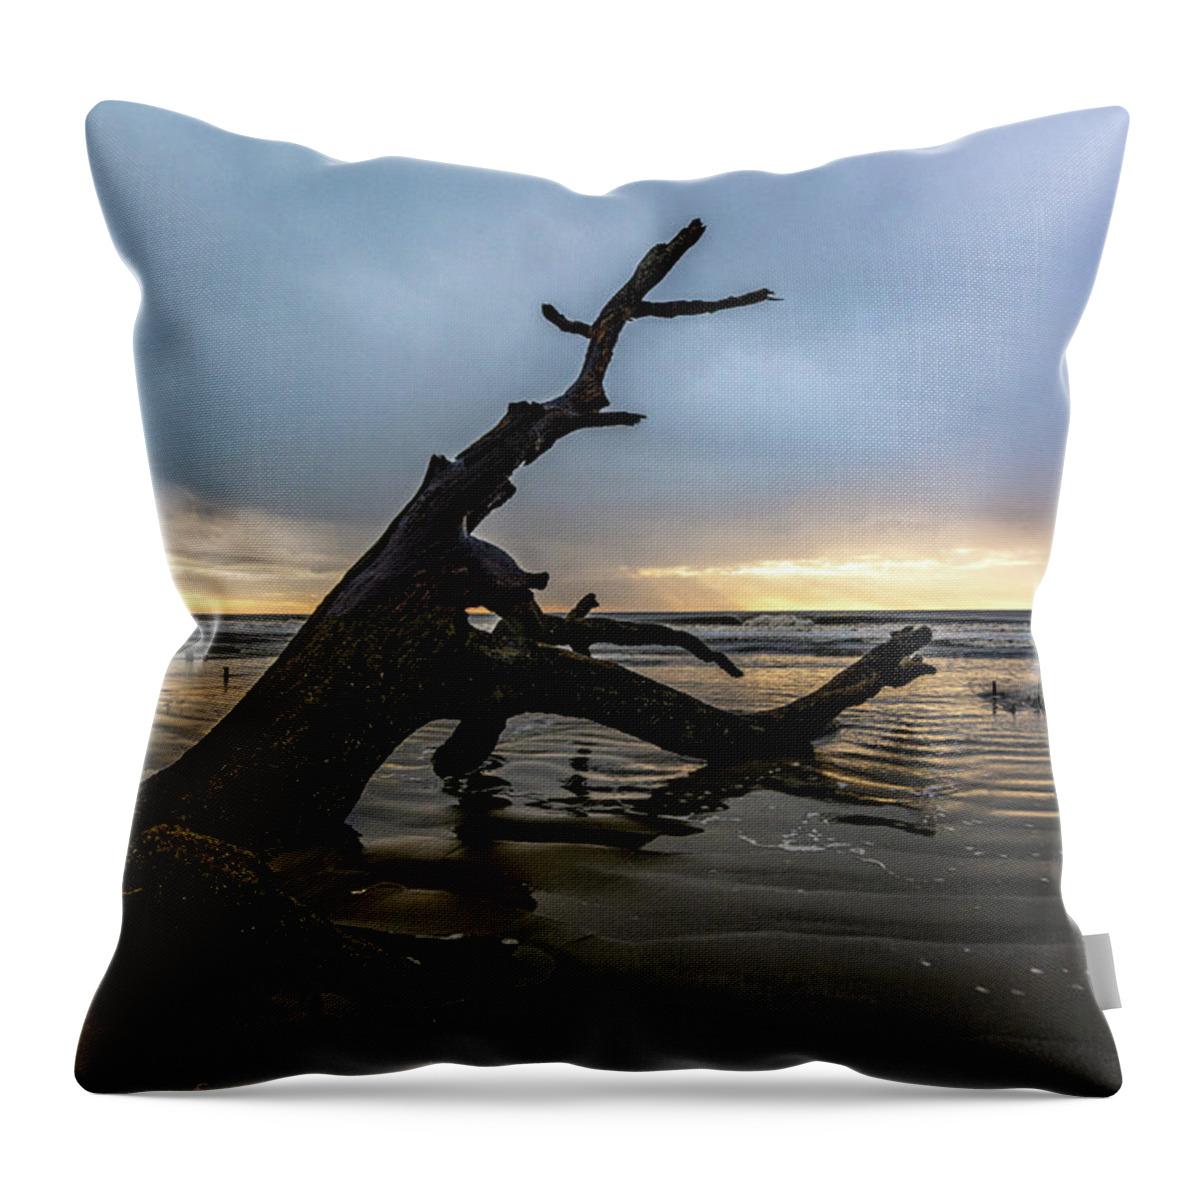 Boneyard Throw Pillow featuring the photograph Botany Bay Plantation Boneyard Beach Fifteen by Douglas Wielfaert